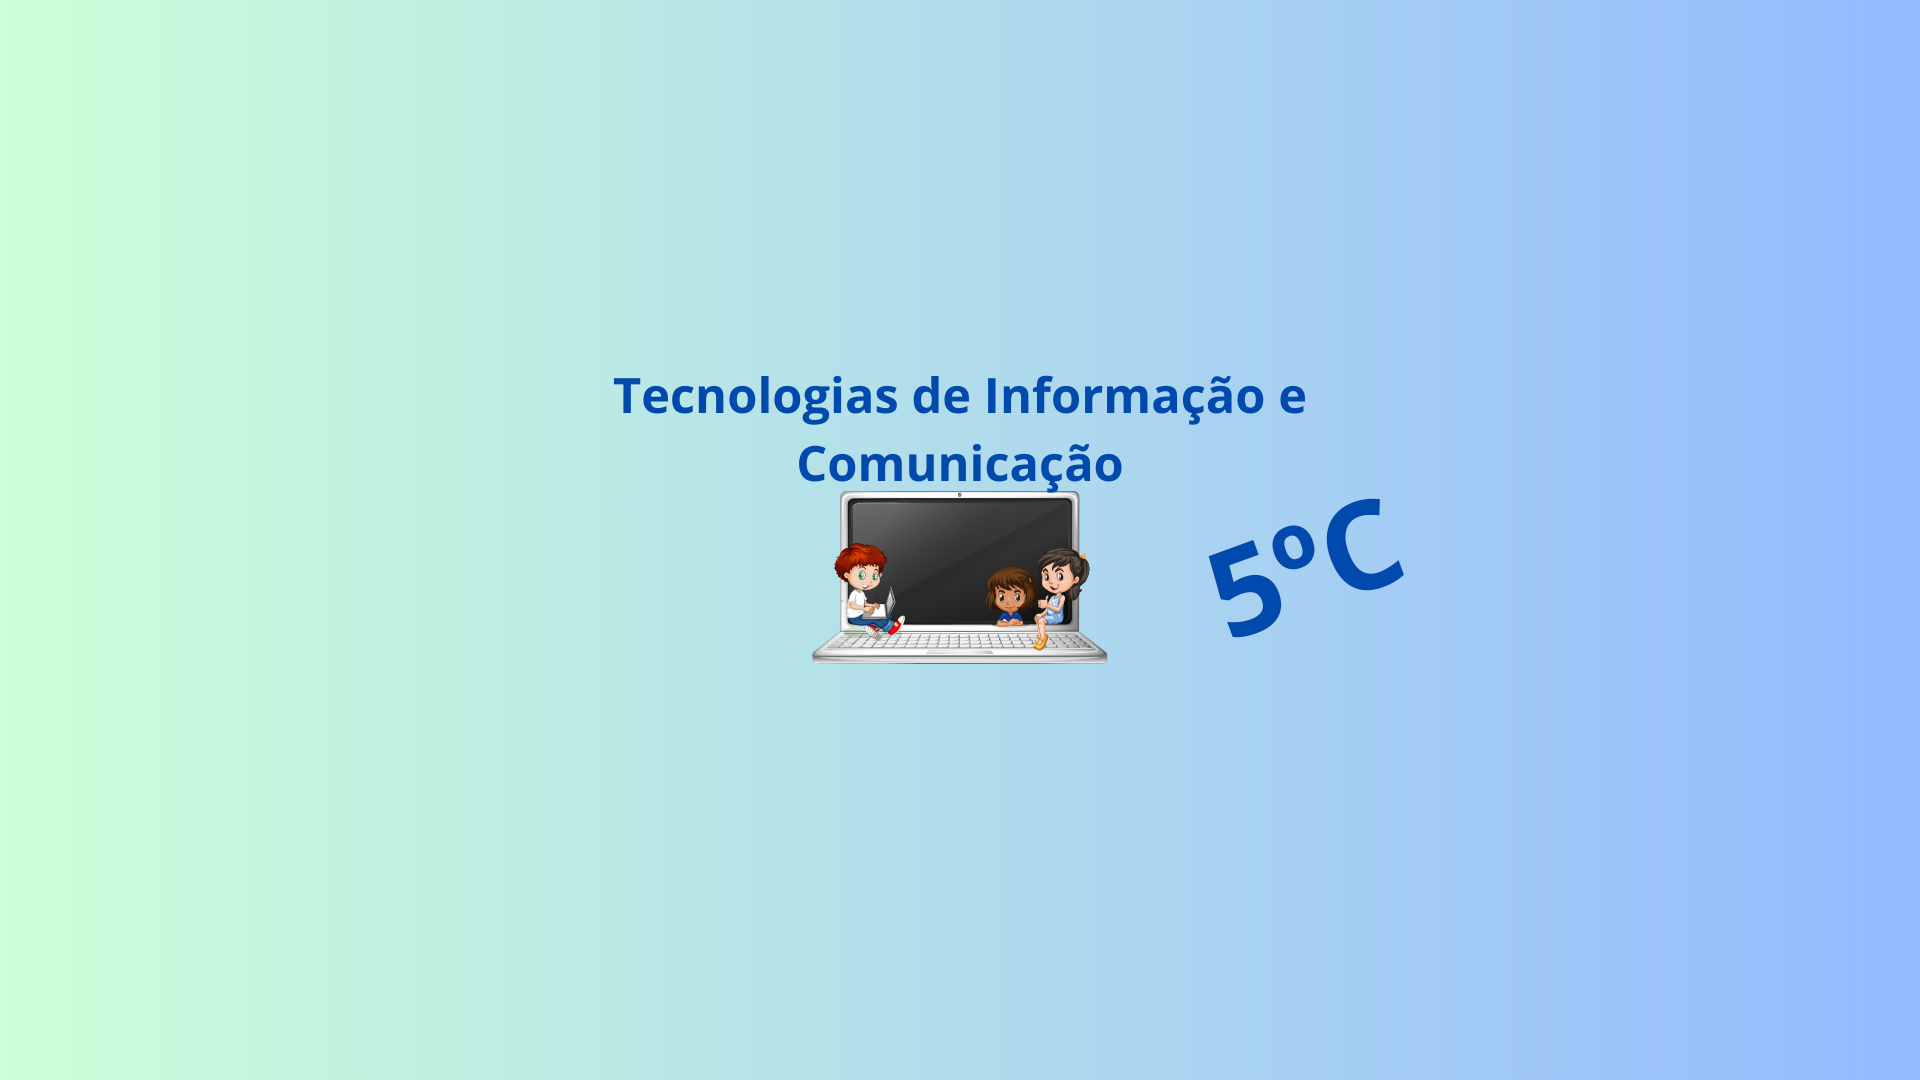 5C - Tecnologias de Informação e Comunicação